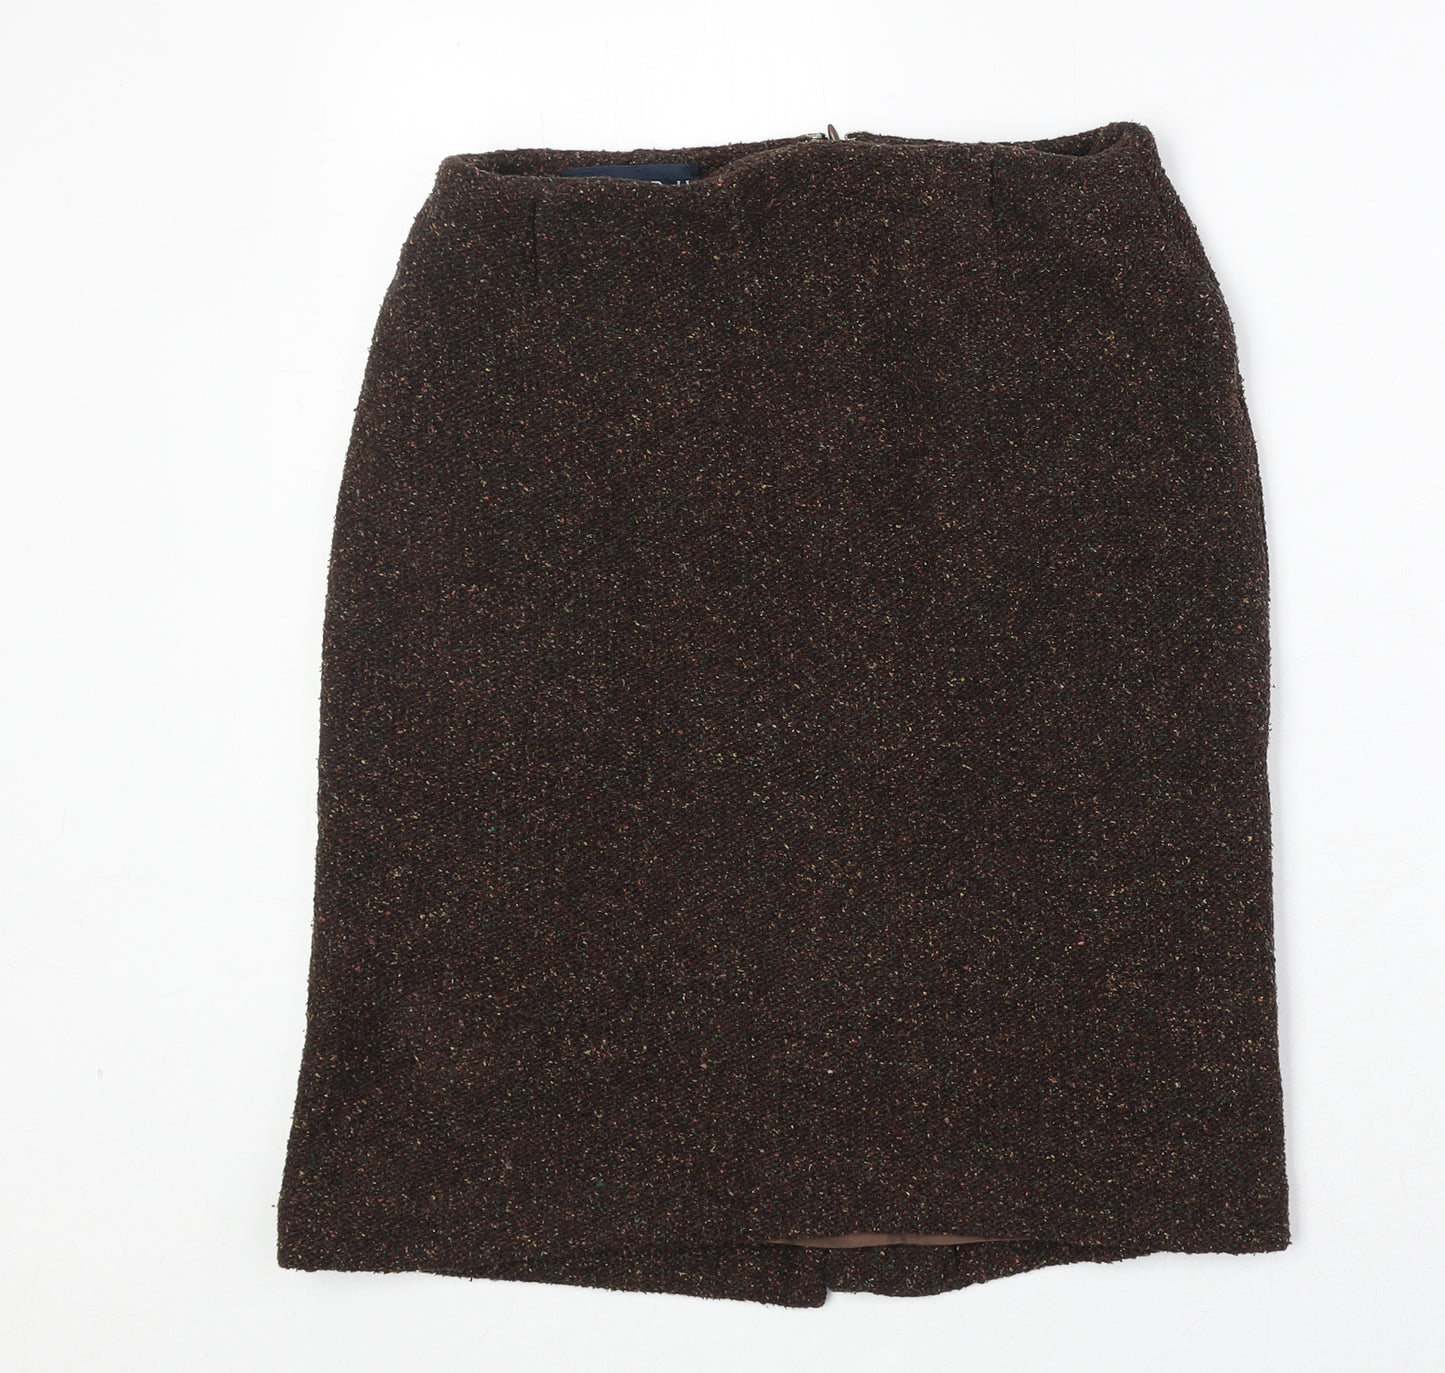 Ralph Lauren Womens Brown Cupro A-Line Skirt Size 8 Zip